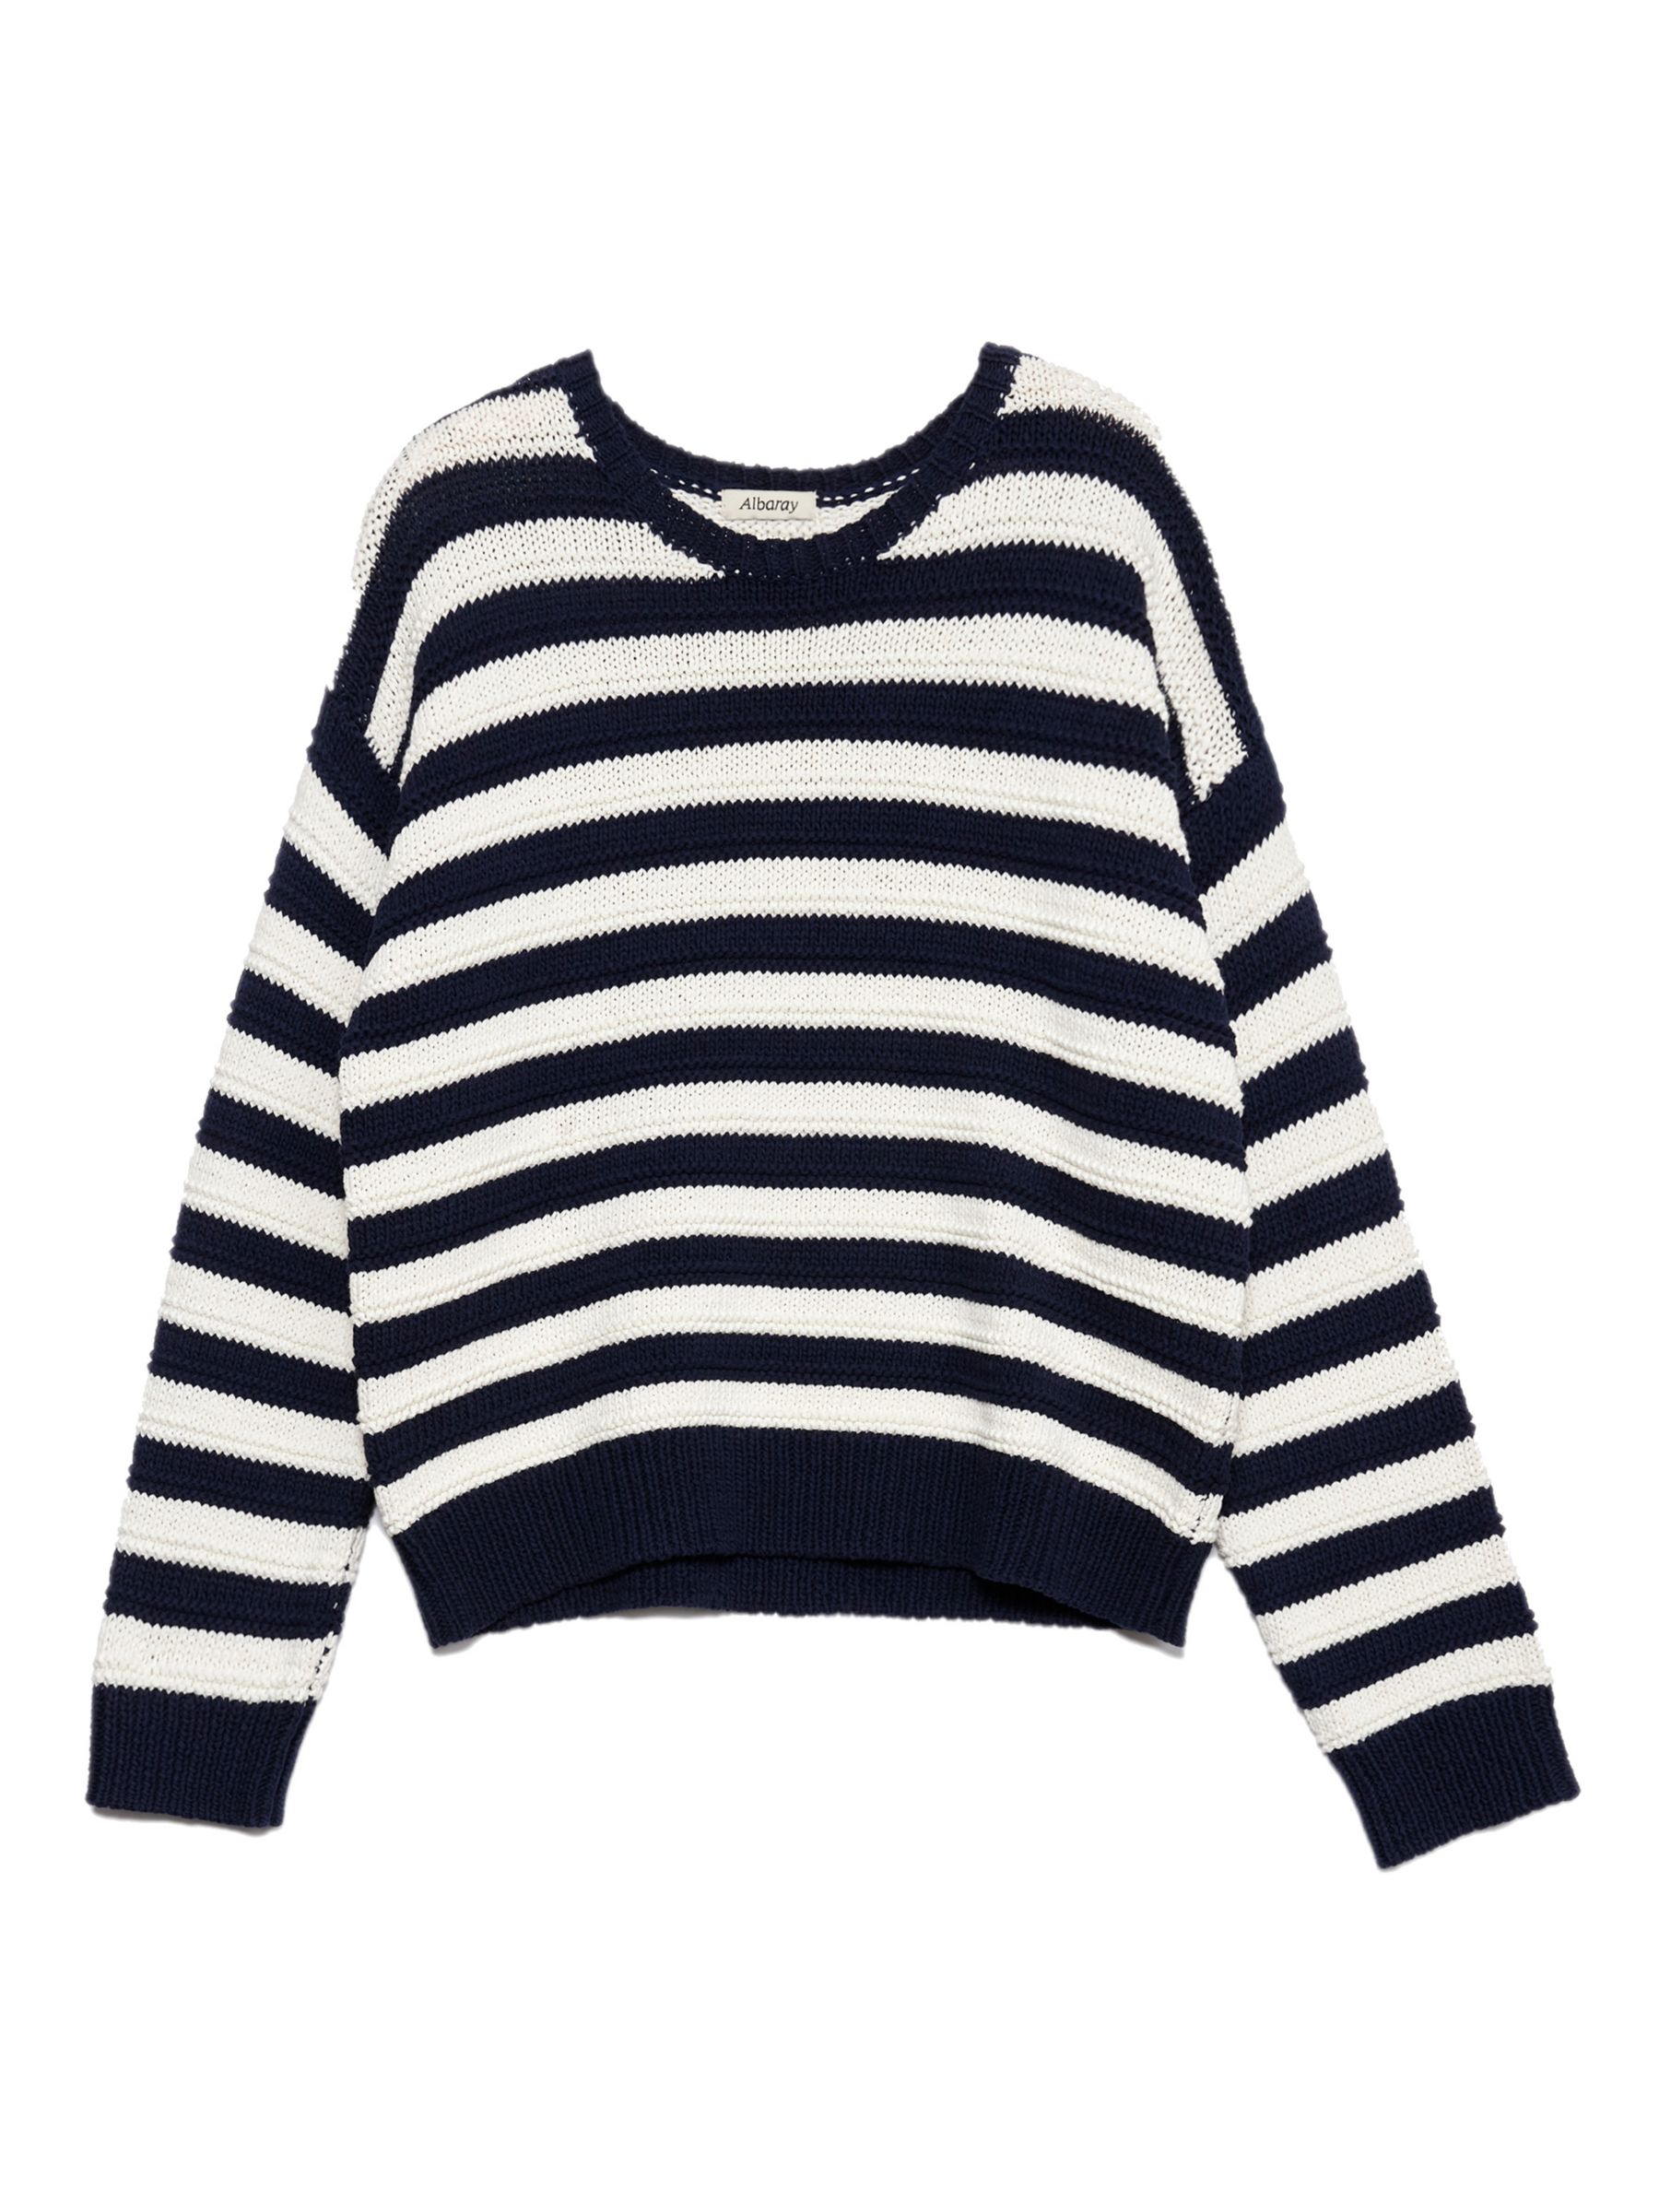 Buy Albaray Textured Stripe Cotton Jumper, Navy/White Online at johnlewis.com